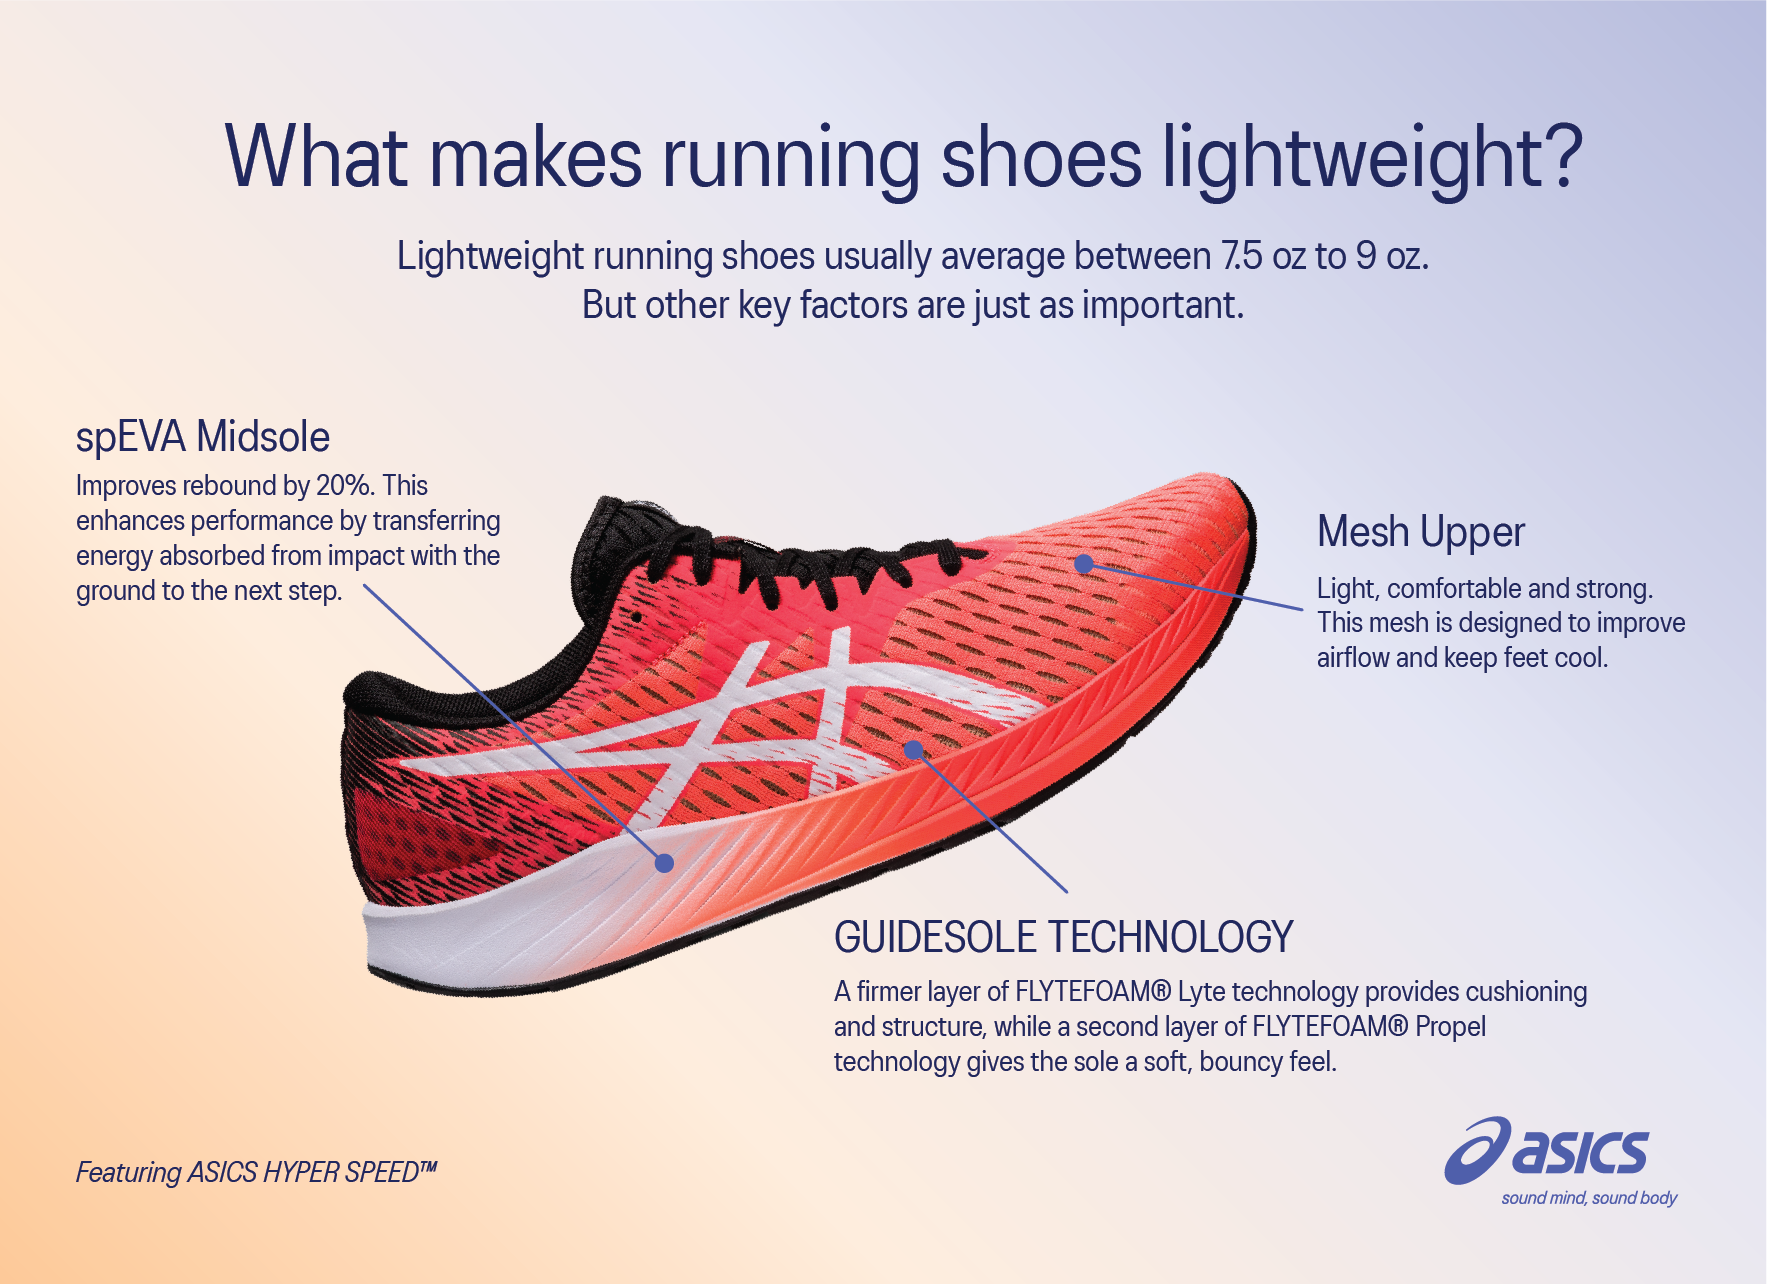 what makes a running shoe lightweight?